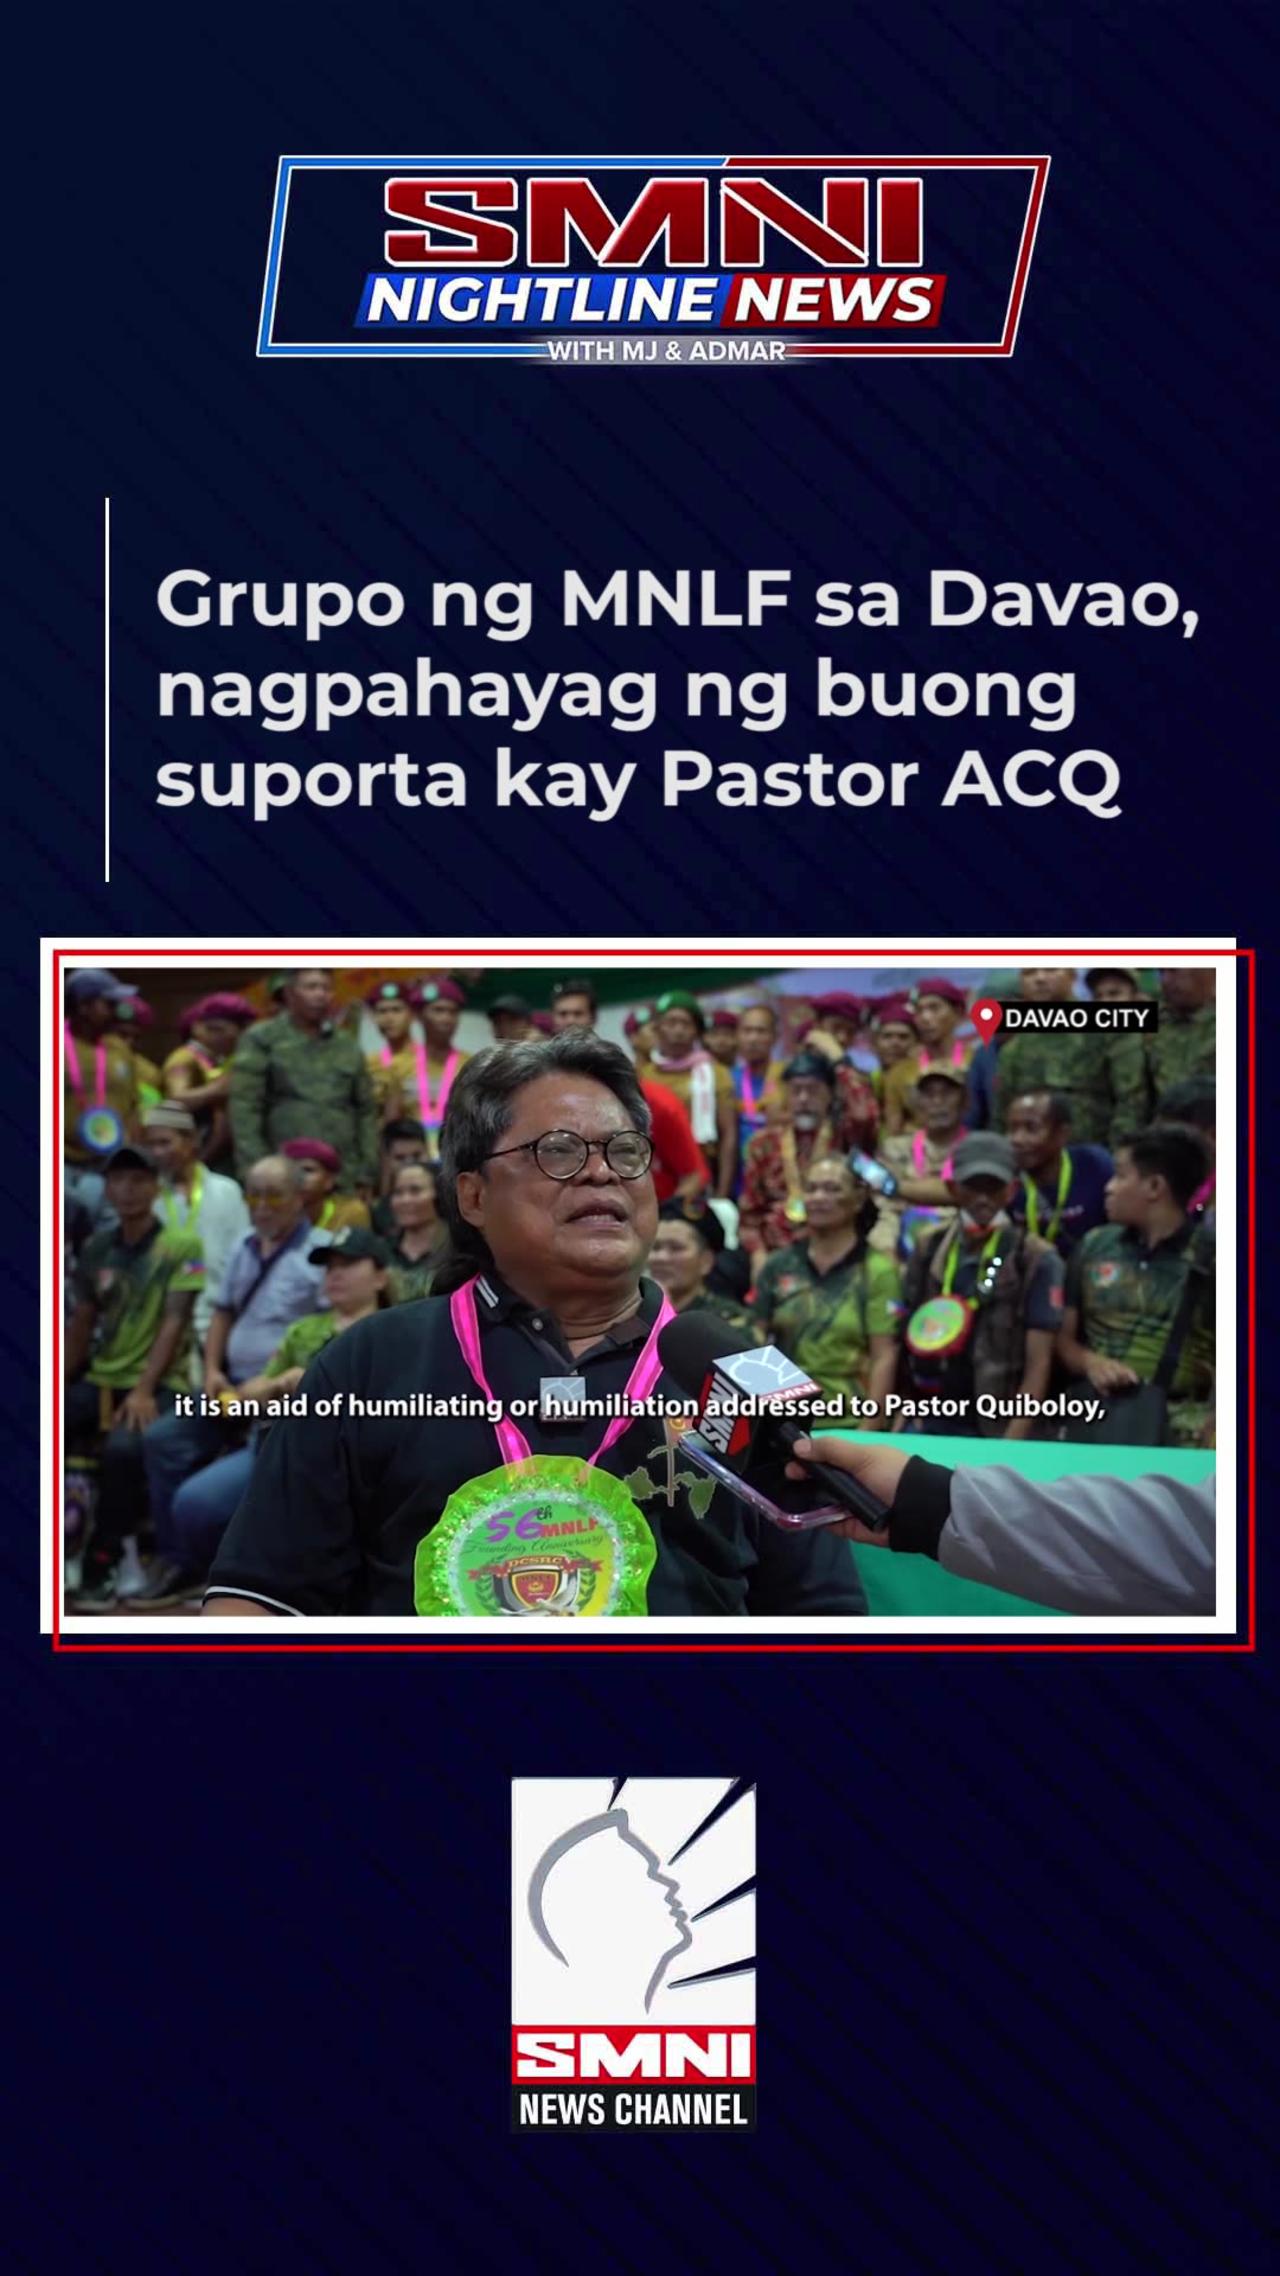 Grupo ng MNLF sa Davao, nagpahayag ng buong suporta kay Pastor ACQ